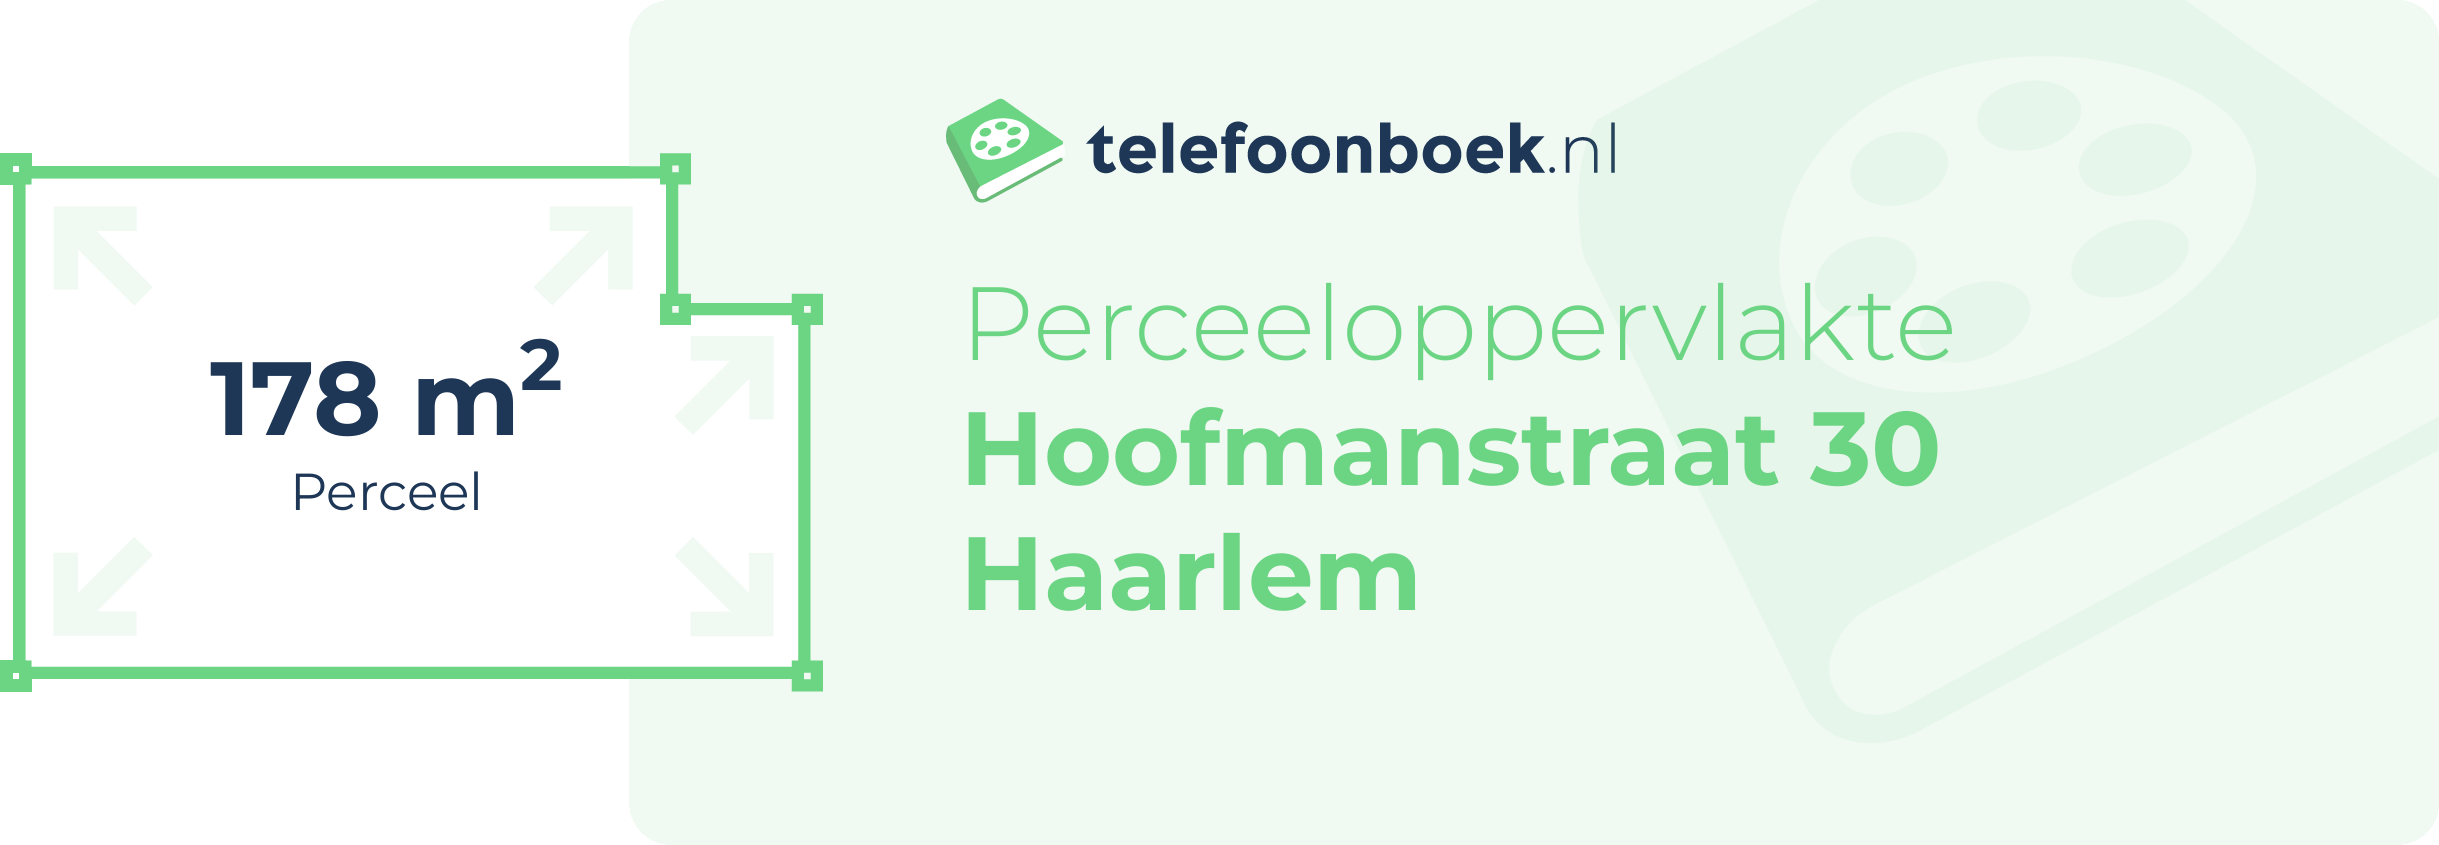 Perceeloppervlakte Hoofmanstraat 30 Haarlem